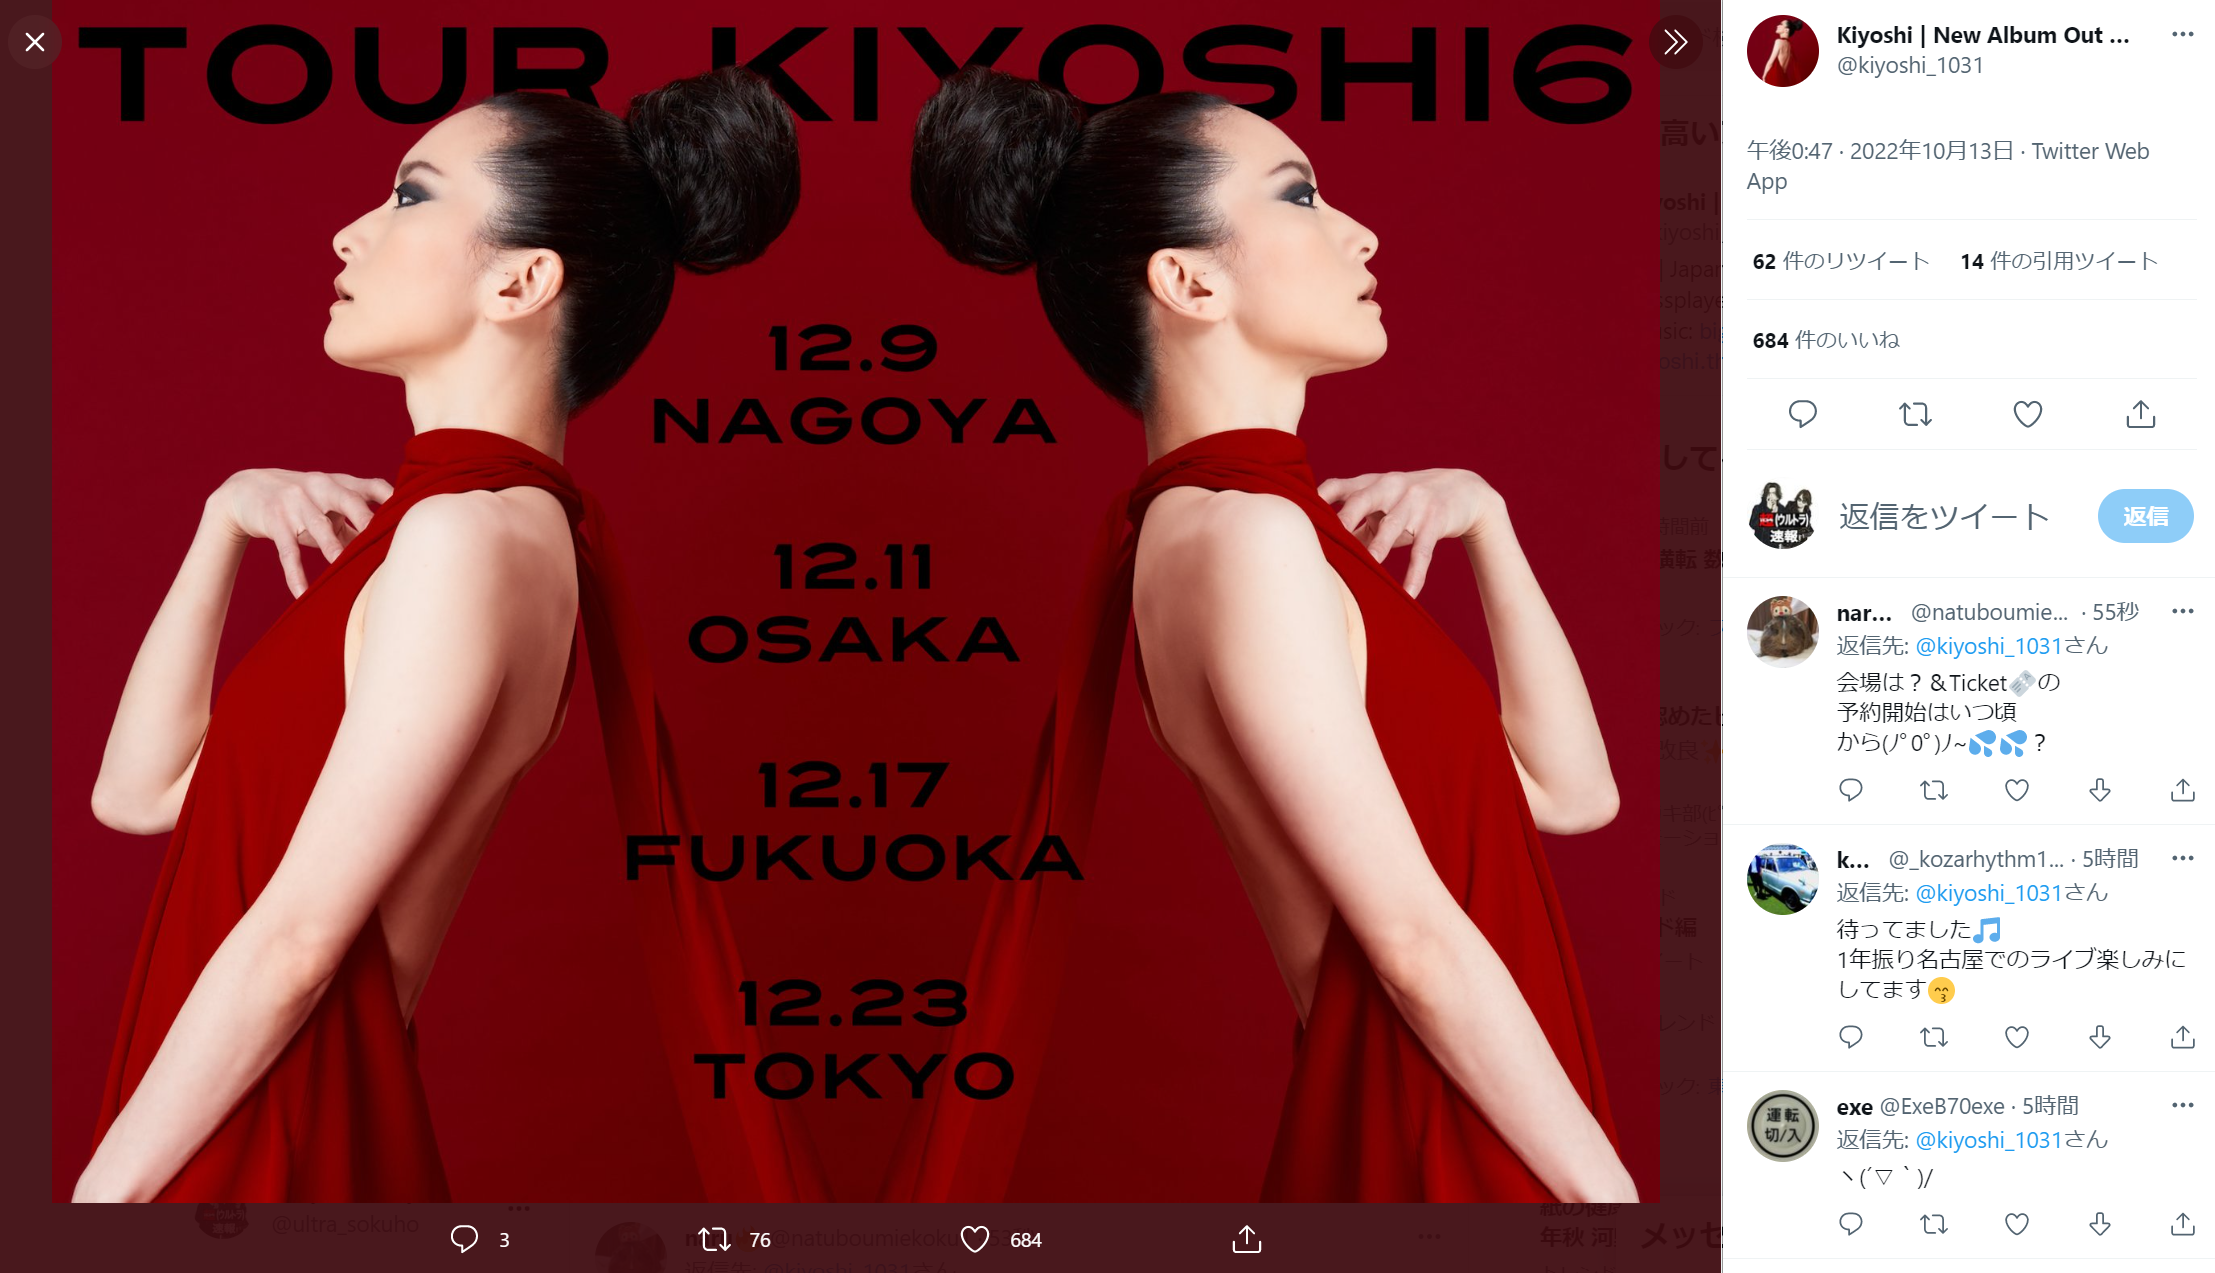 清が投稿した「TOUR KIYOSHI6」のポスターのキャプチャ画像